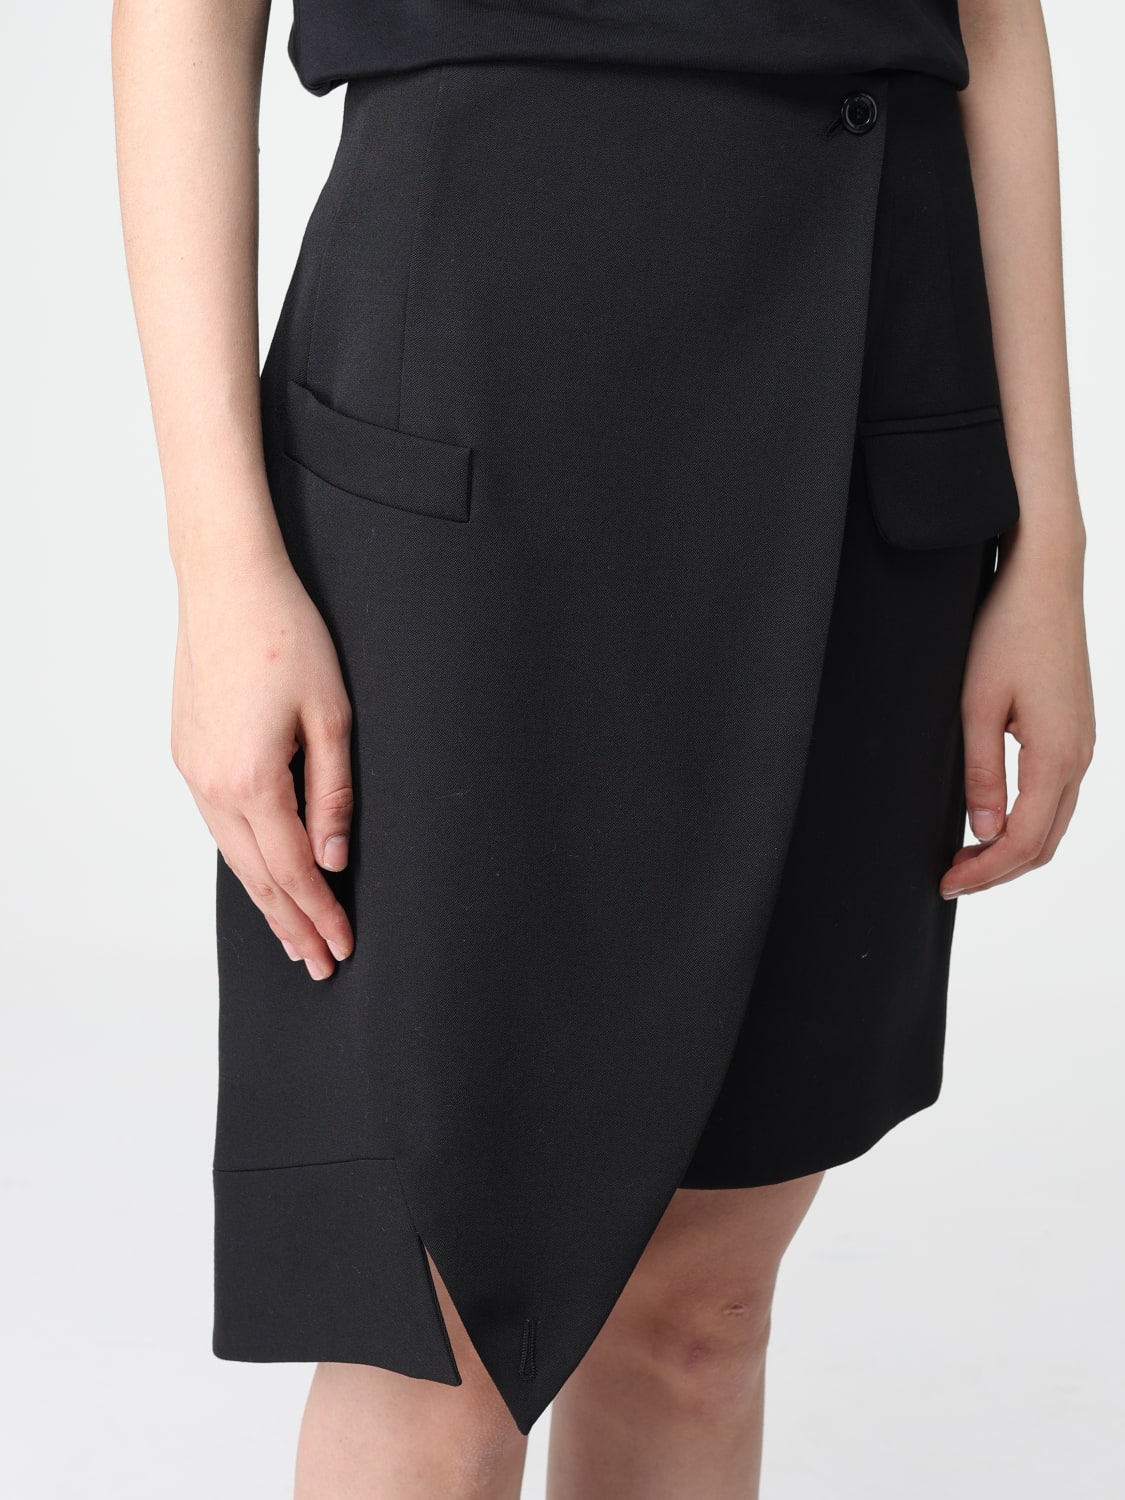 MOSCHINO COUTURE: women's skirt - Black | Moschino Couture skirt ...